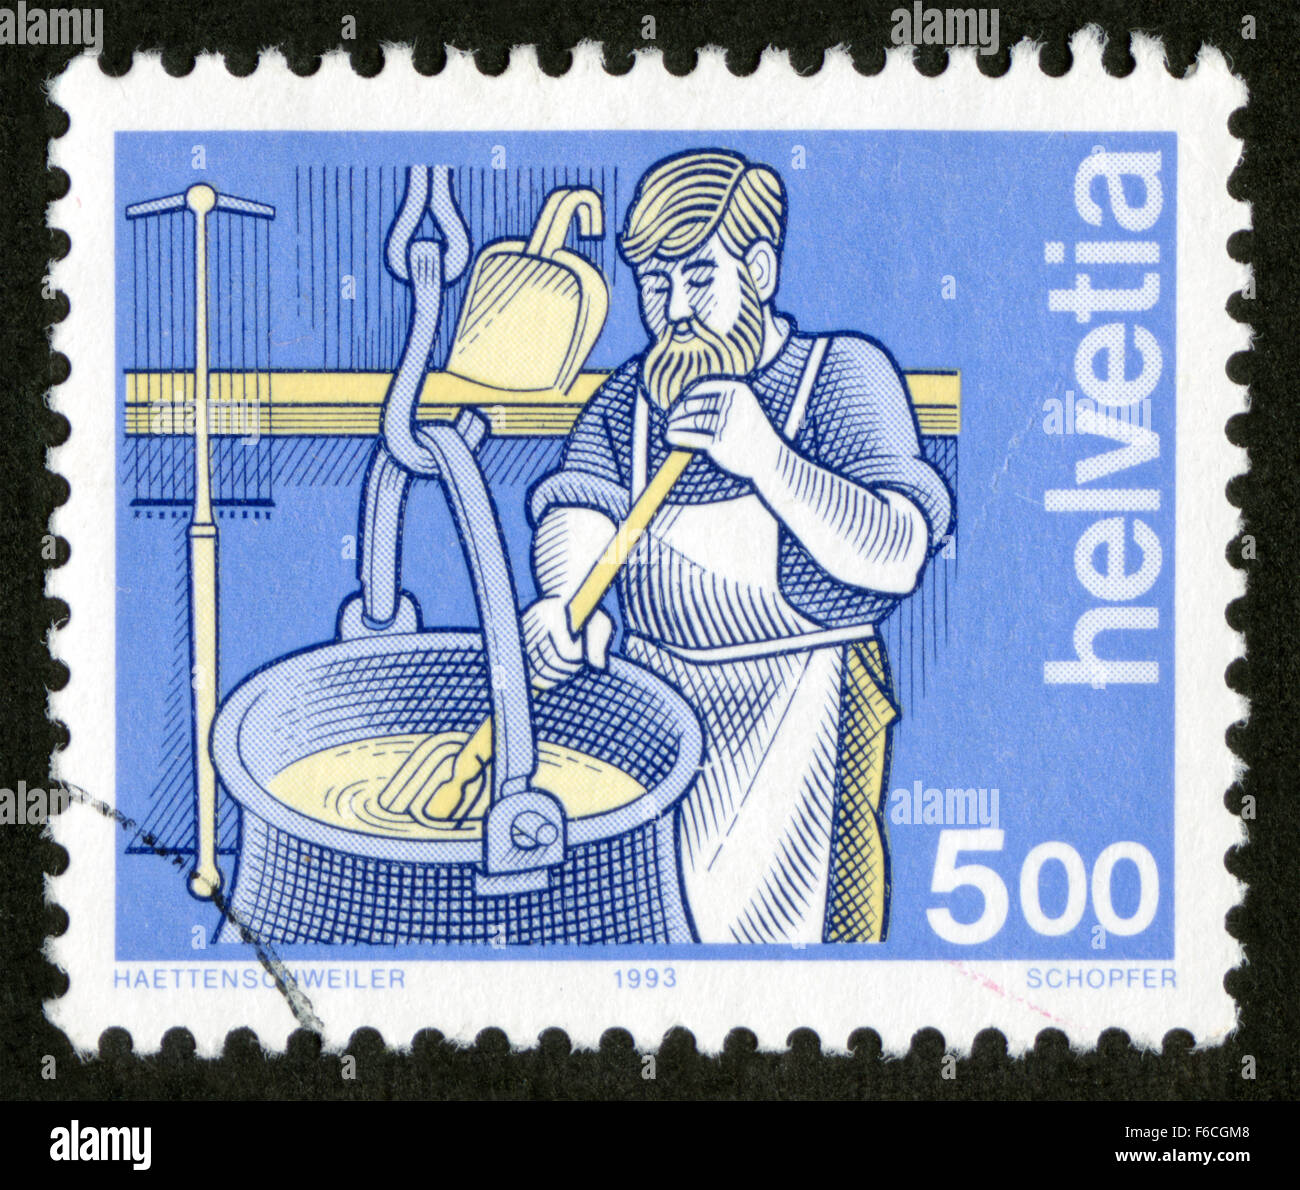 La Suisse, post production, timbres,mark Banque D'Images